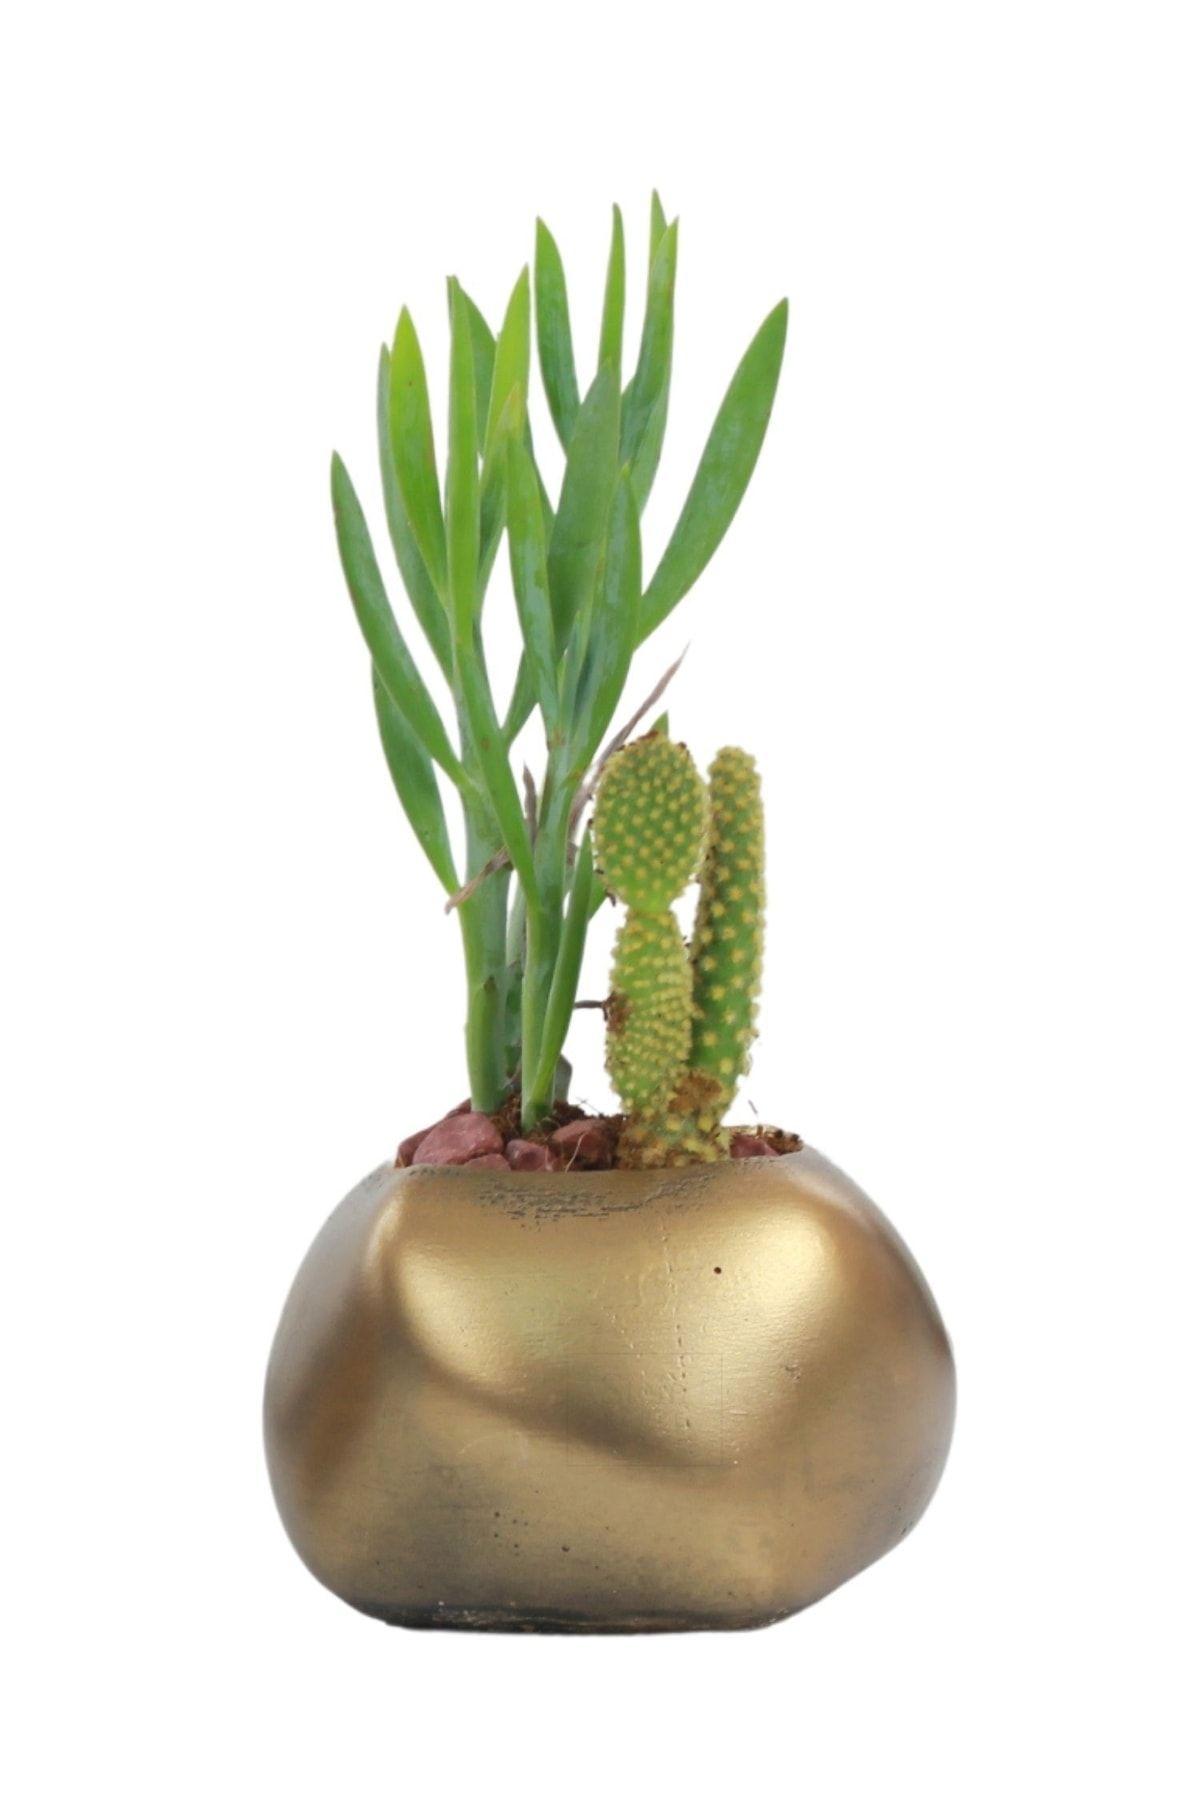 Stein Kohle Çiçek Saksısı Dekoratif Kaktüs Saksı 1 Adet Altın Renk Eskitme Uygulamalı Spiral Oval Model